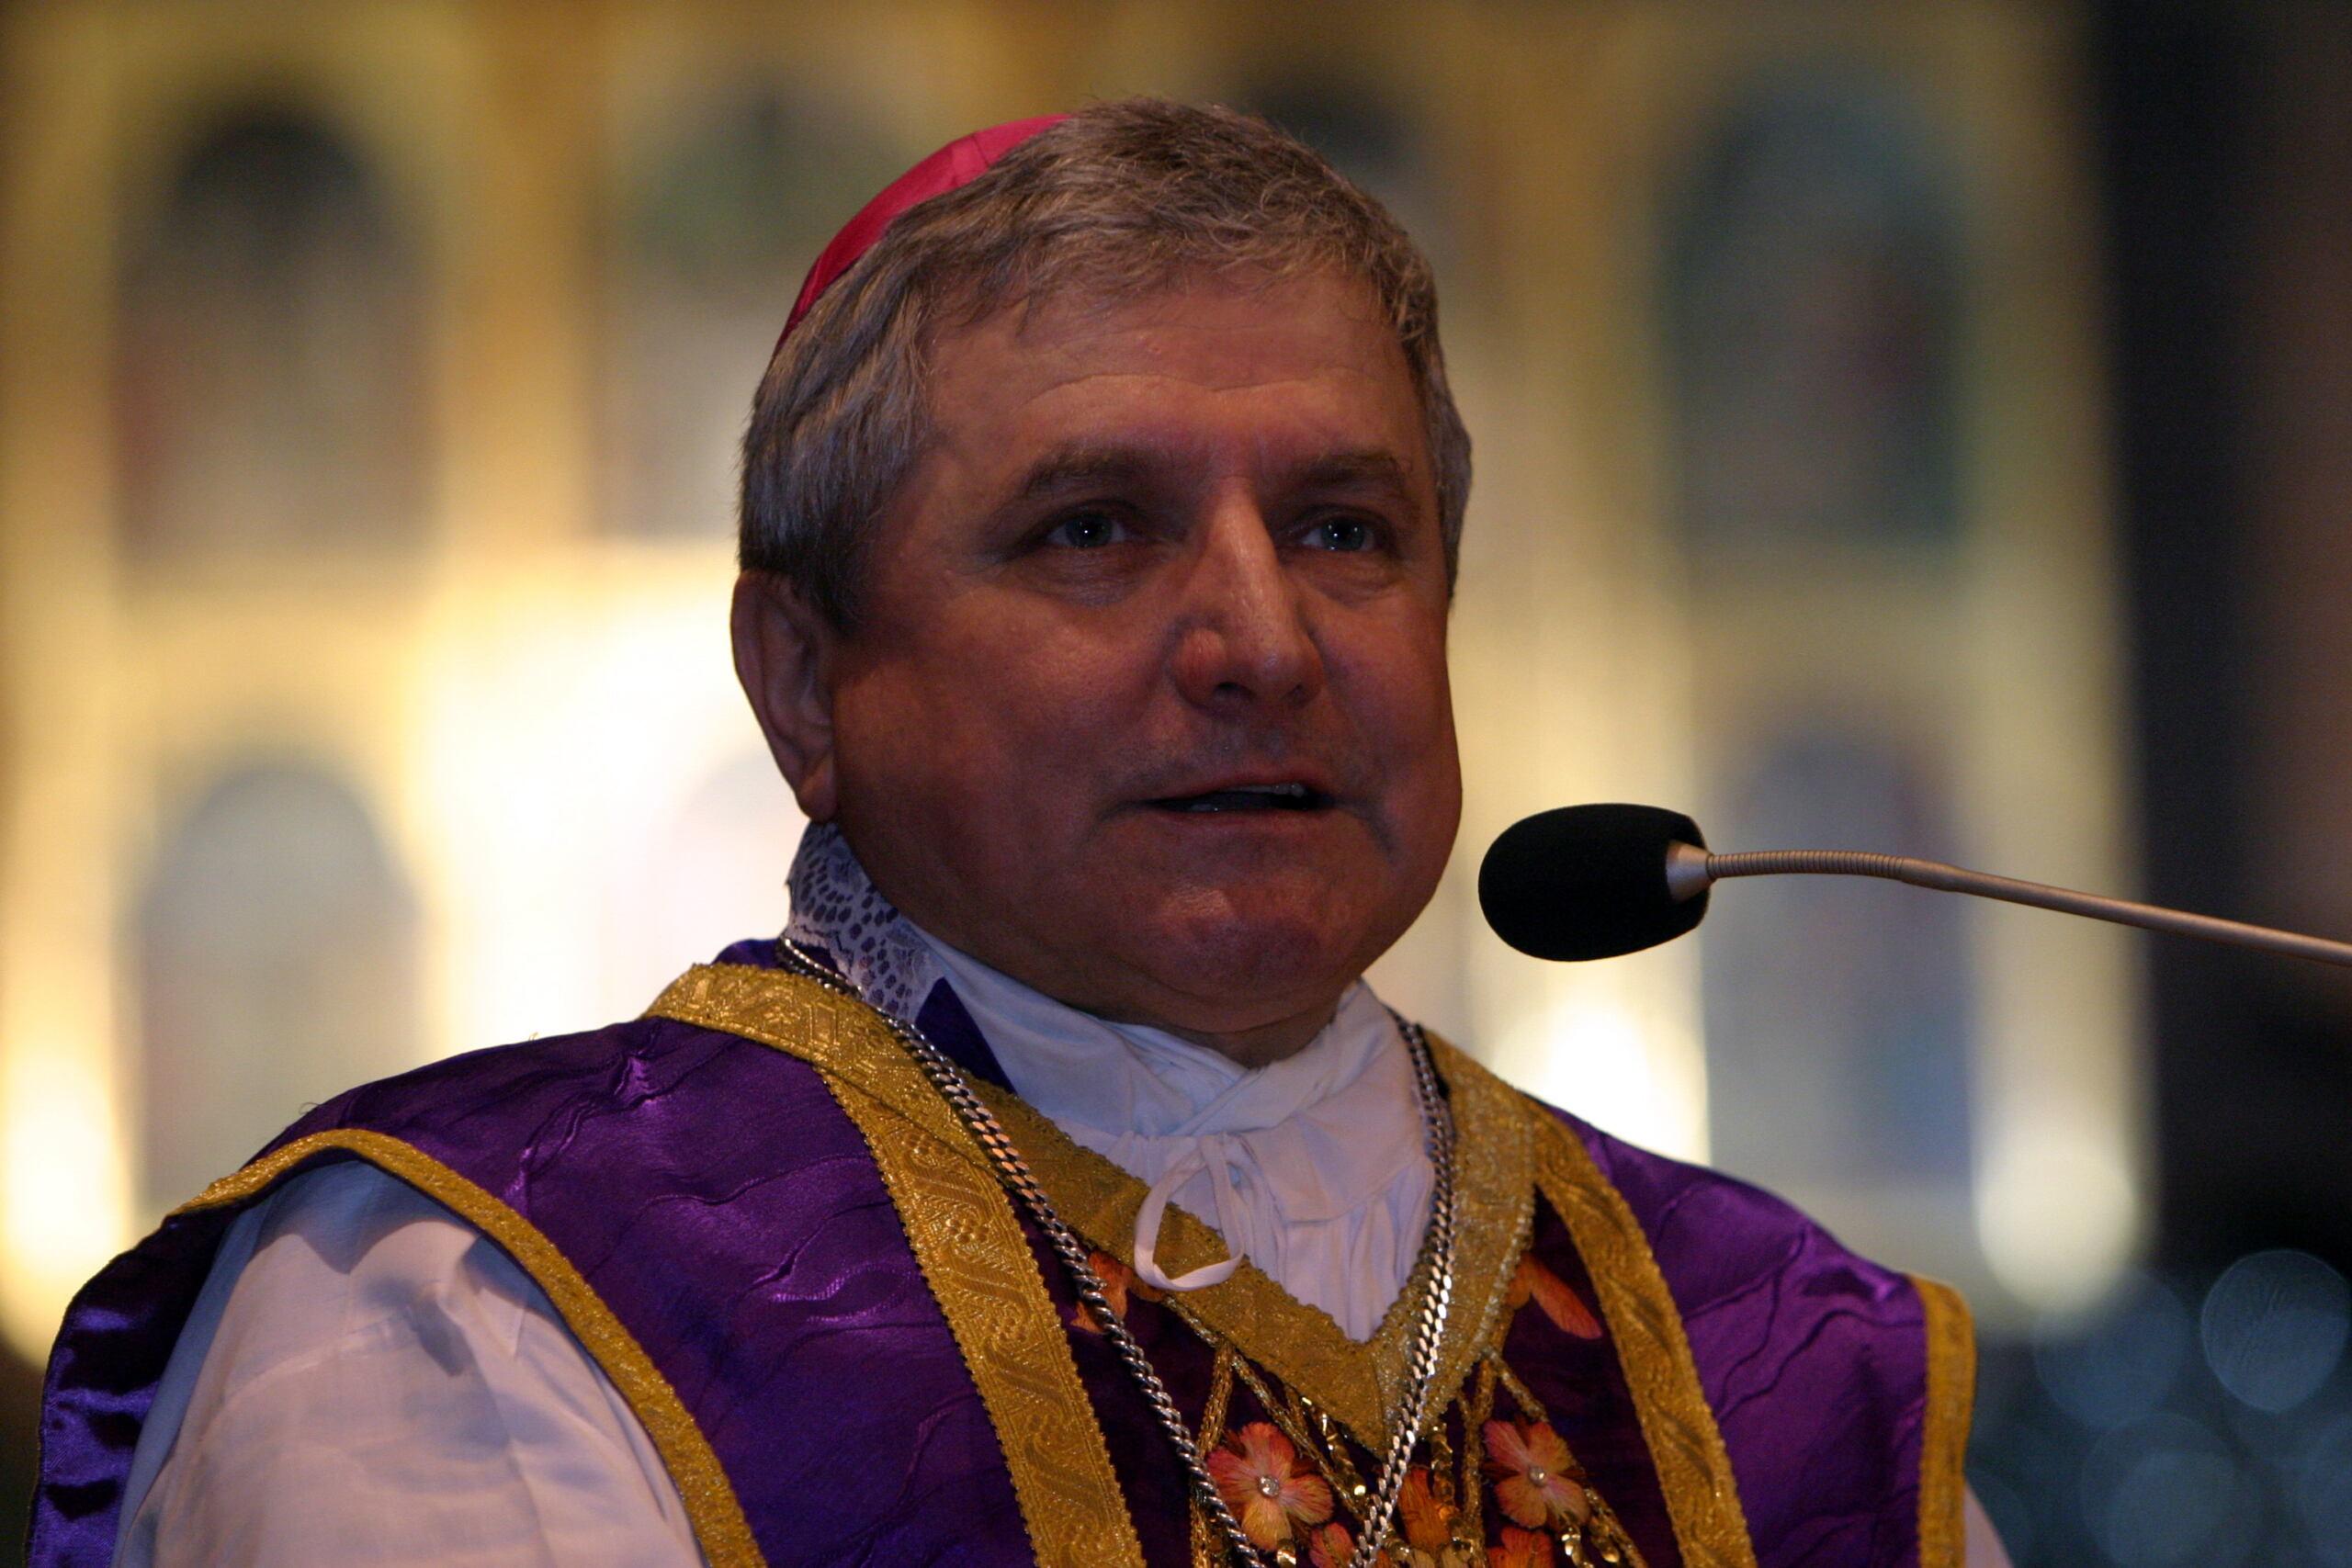 Biskup Edward Janiak złożył rezygnację z urzędu. Papież Franciszek ją przyjął.